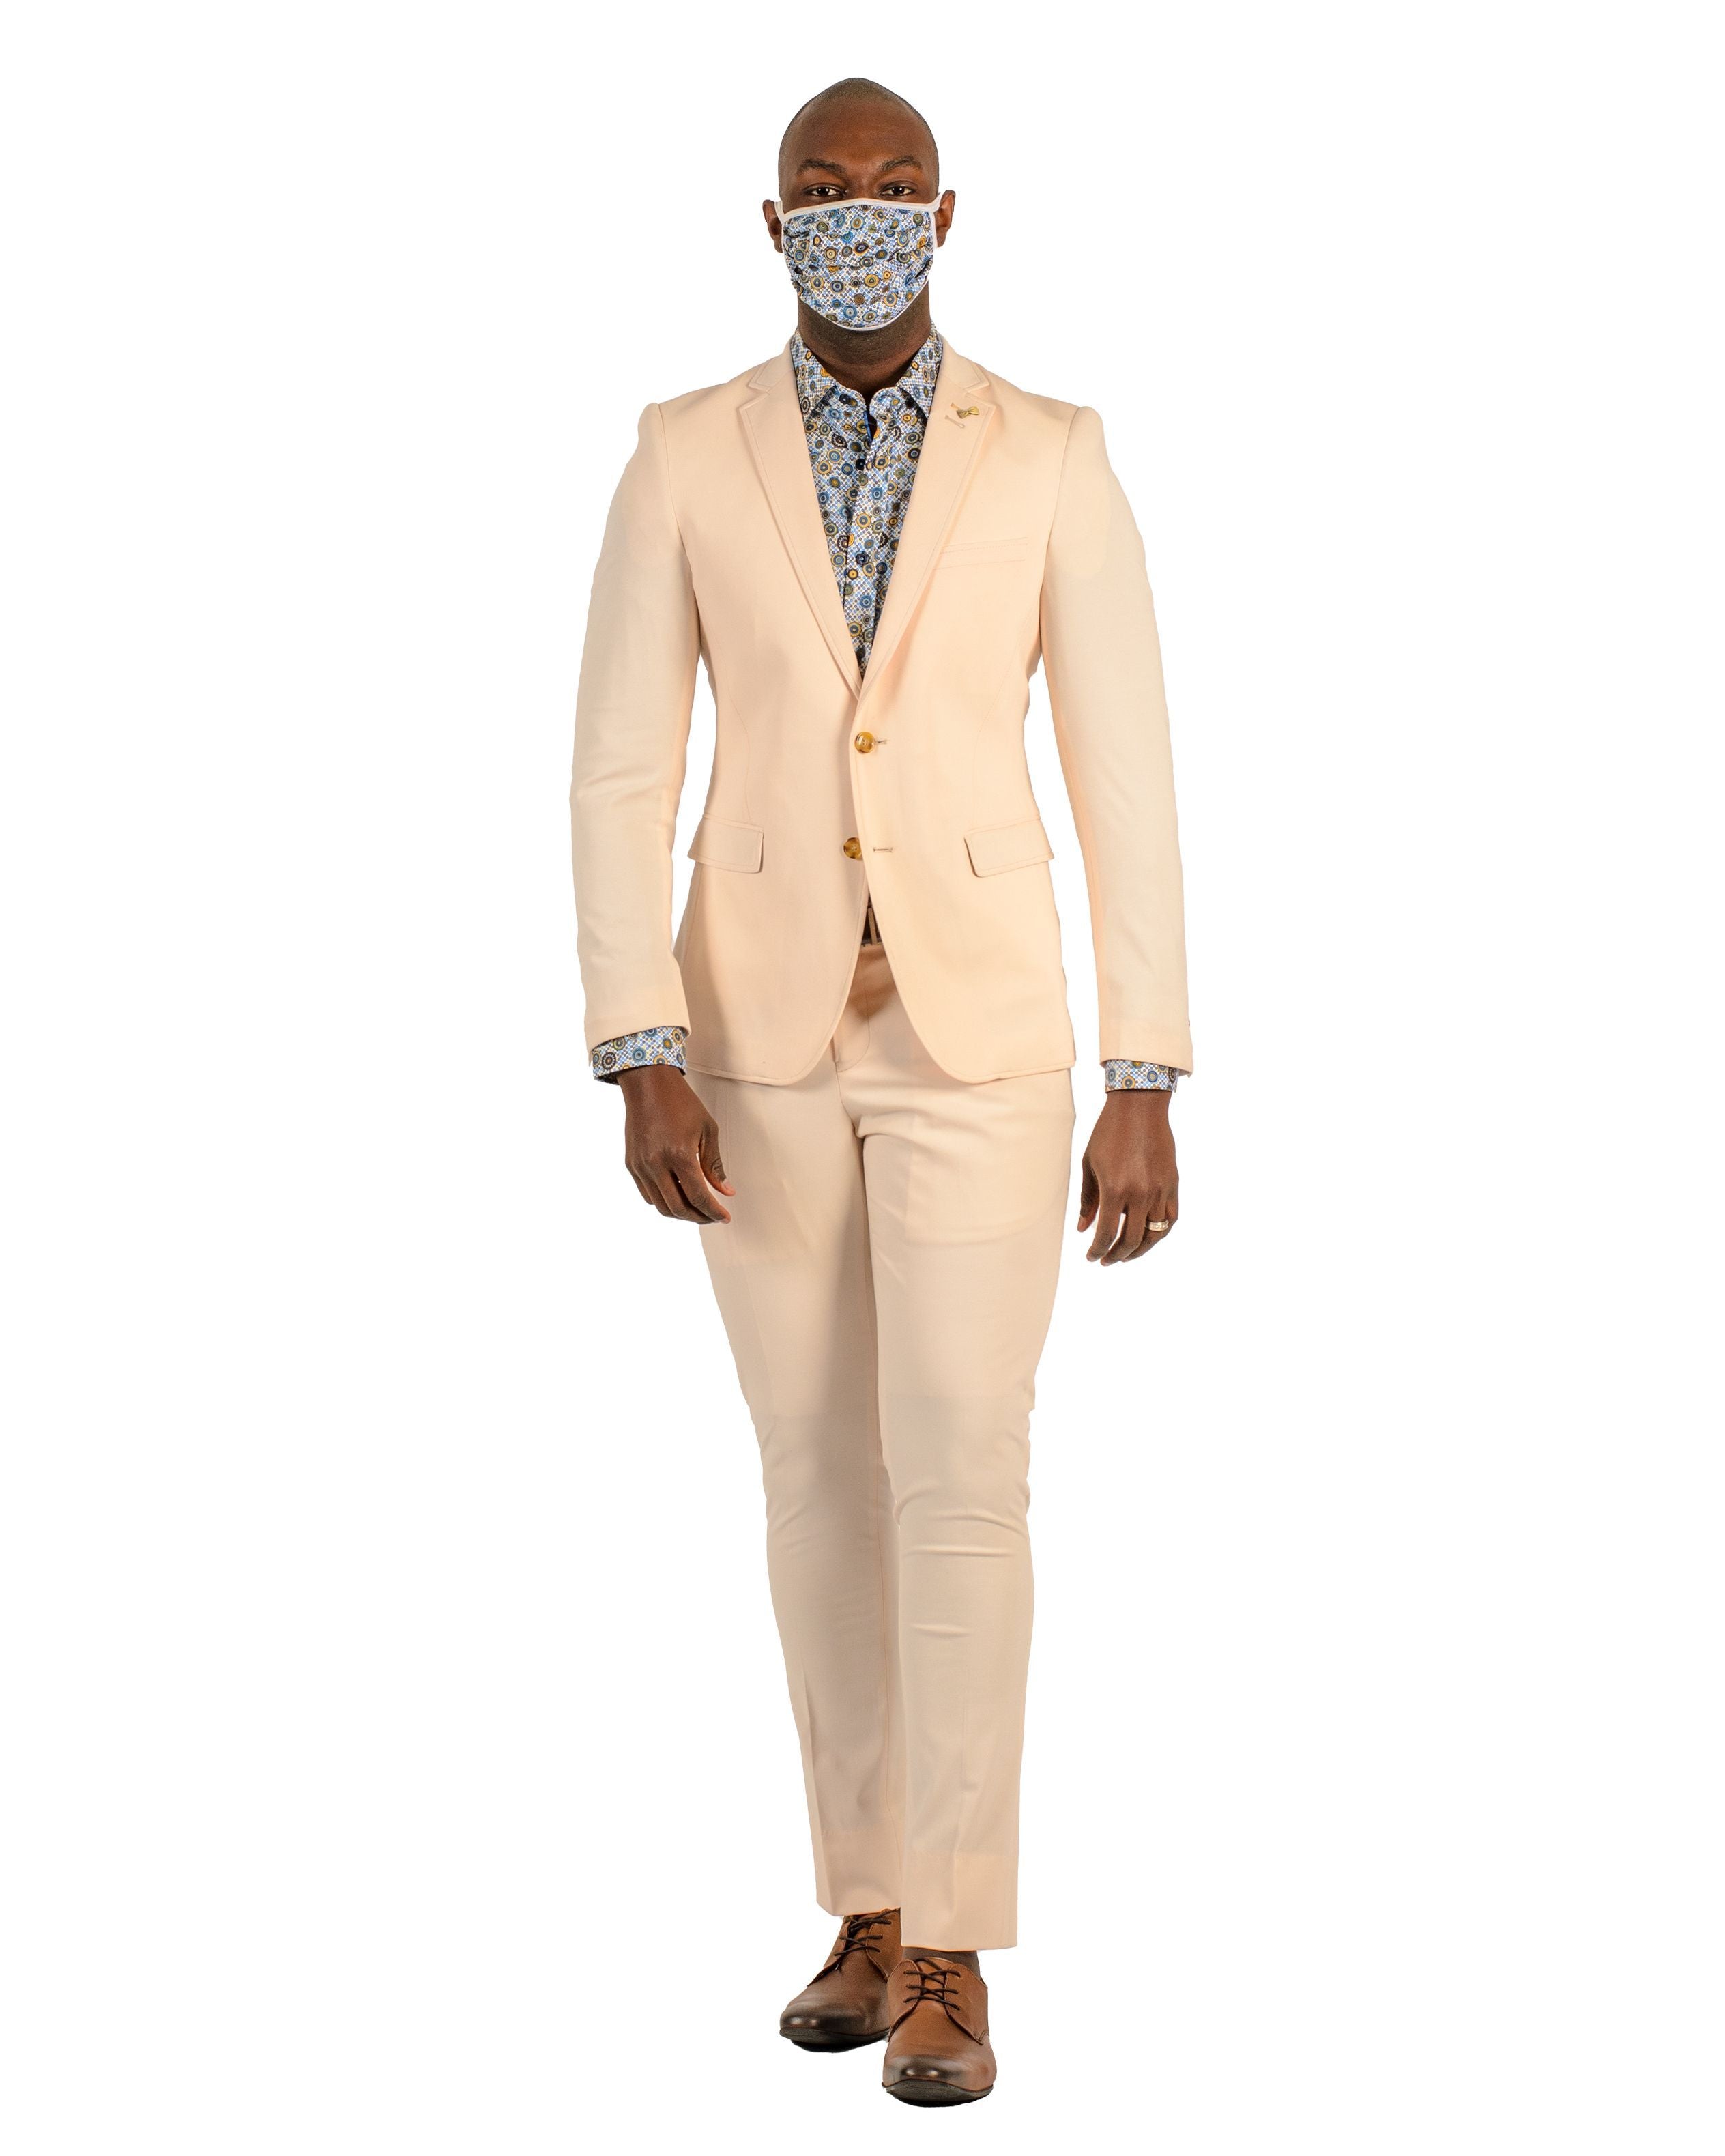 Italian-Giovanni Suit | Italian fashion brands, Fashion, Clothes design